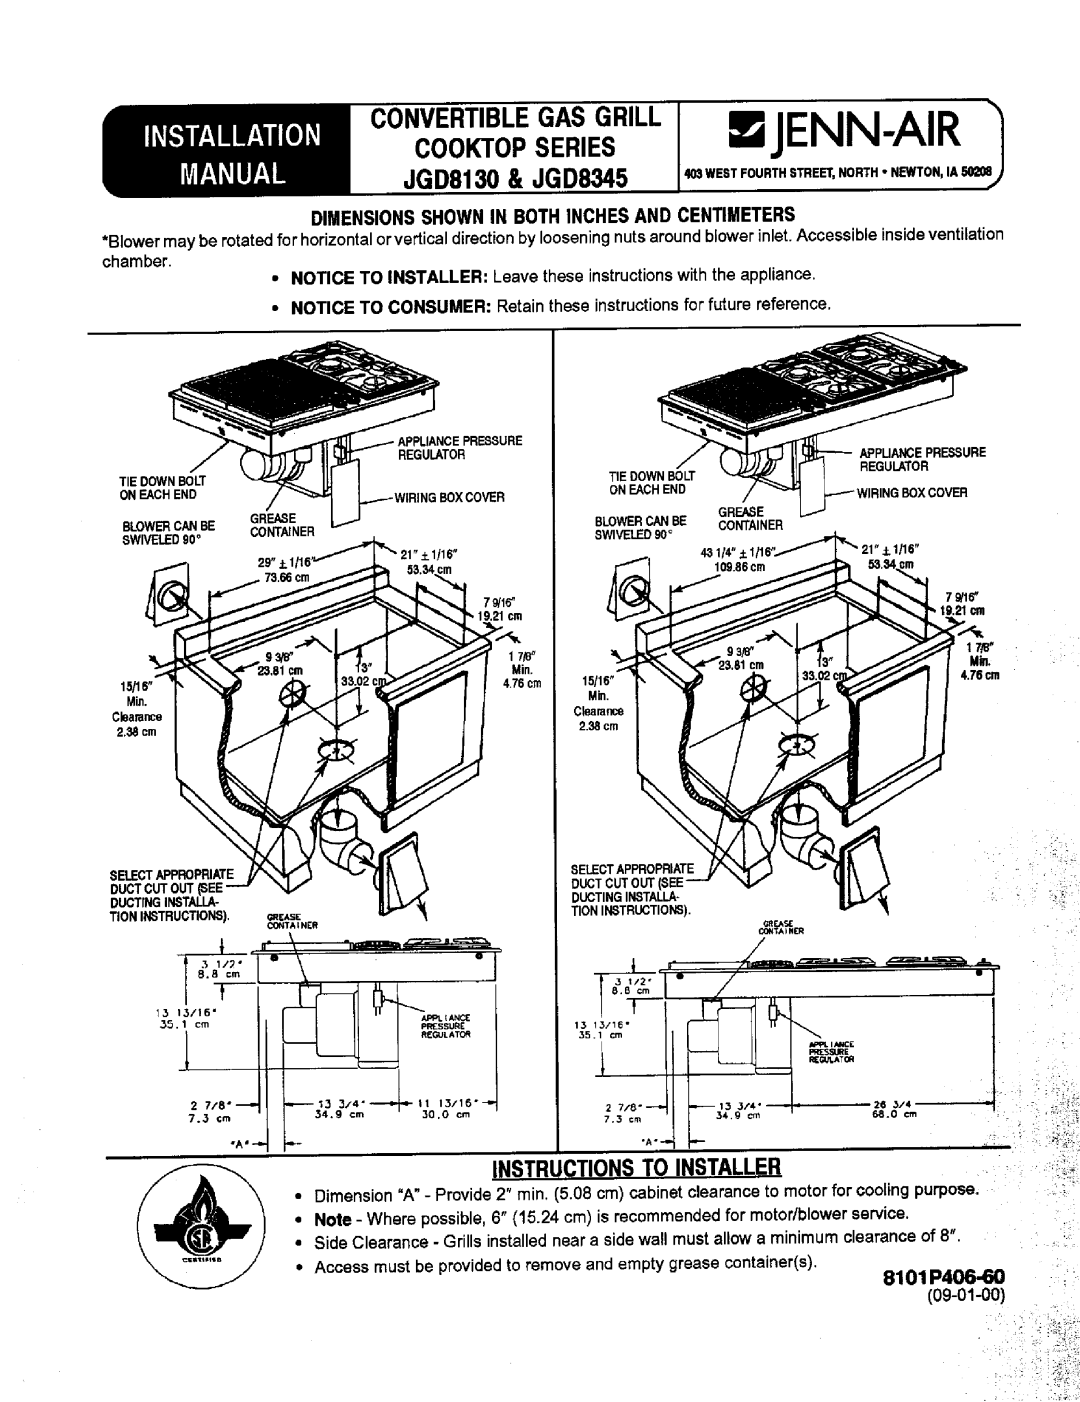 Jenn-Air JGD8130 installation manual INSTRUCTIONSTOINSTALLER 8101 P406..60, Installation Co.Veblrget,Asgrill Jenn-Air 